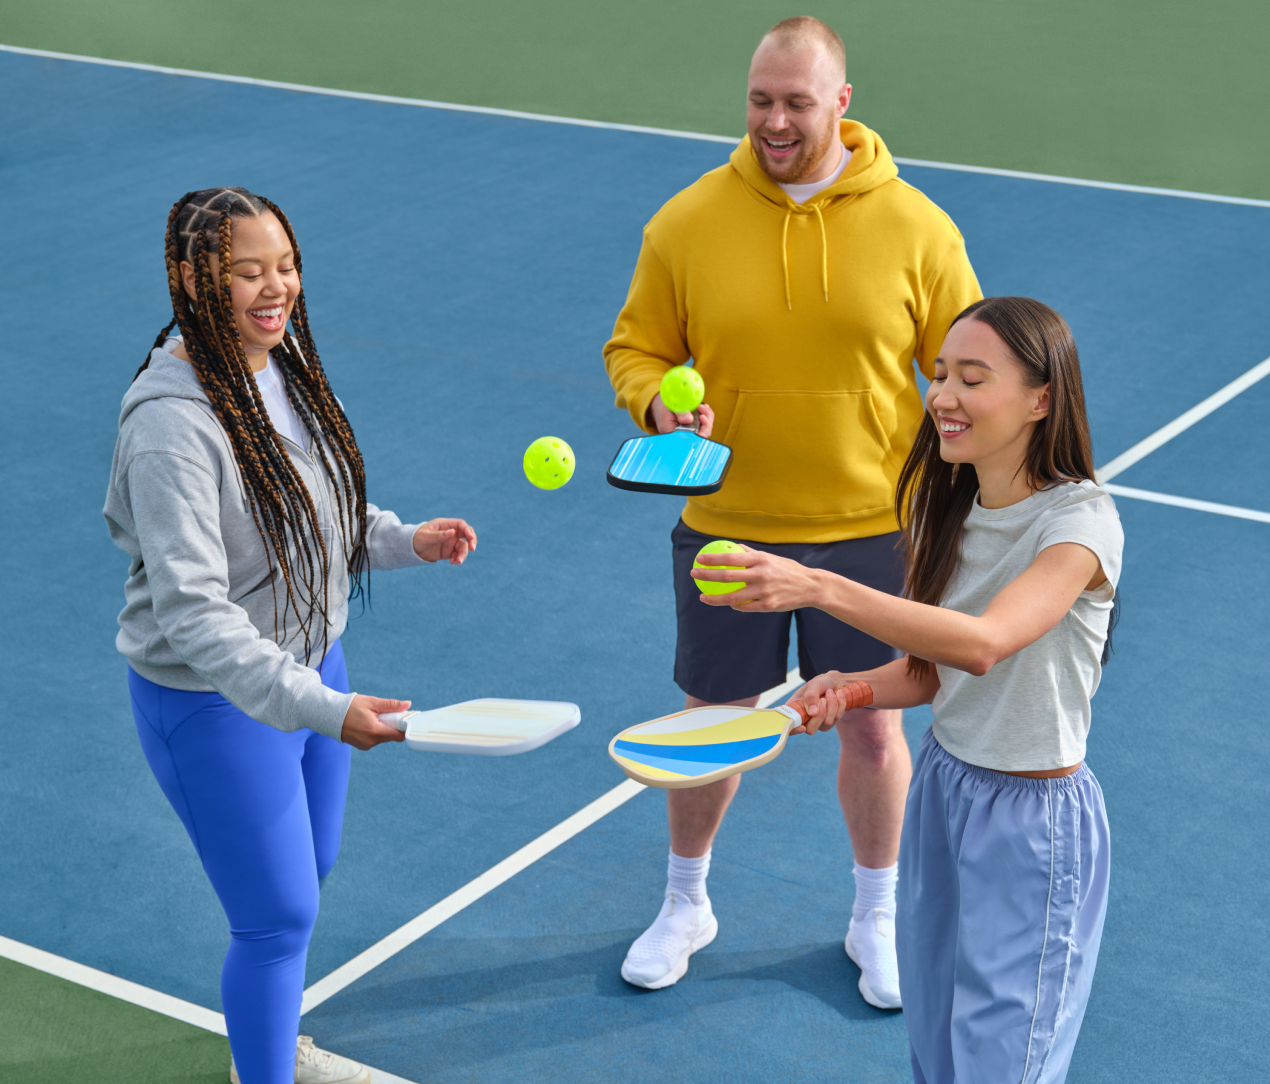 Tennis player meetup on tennis court